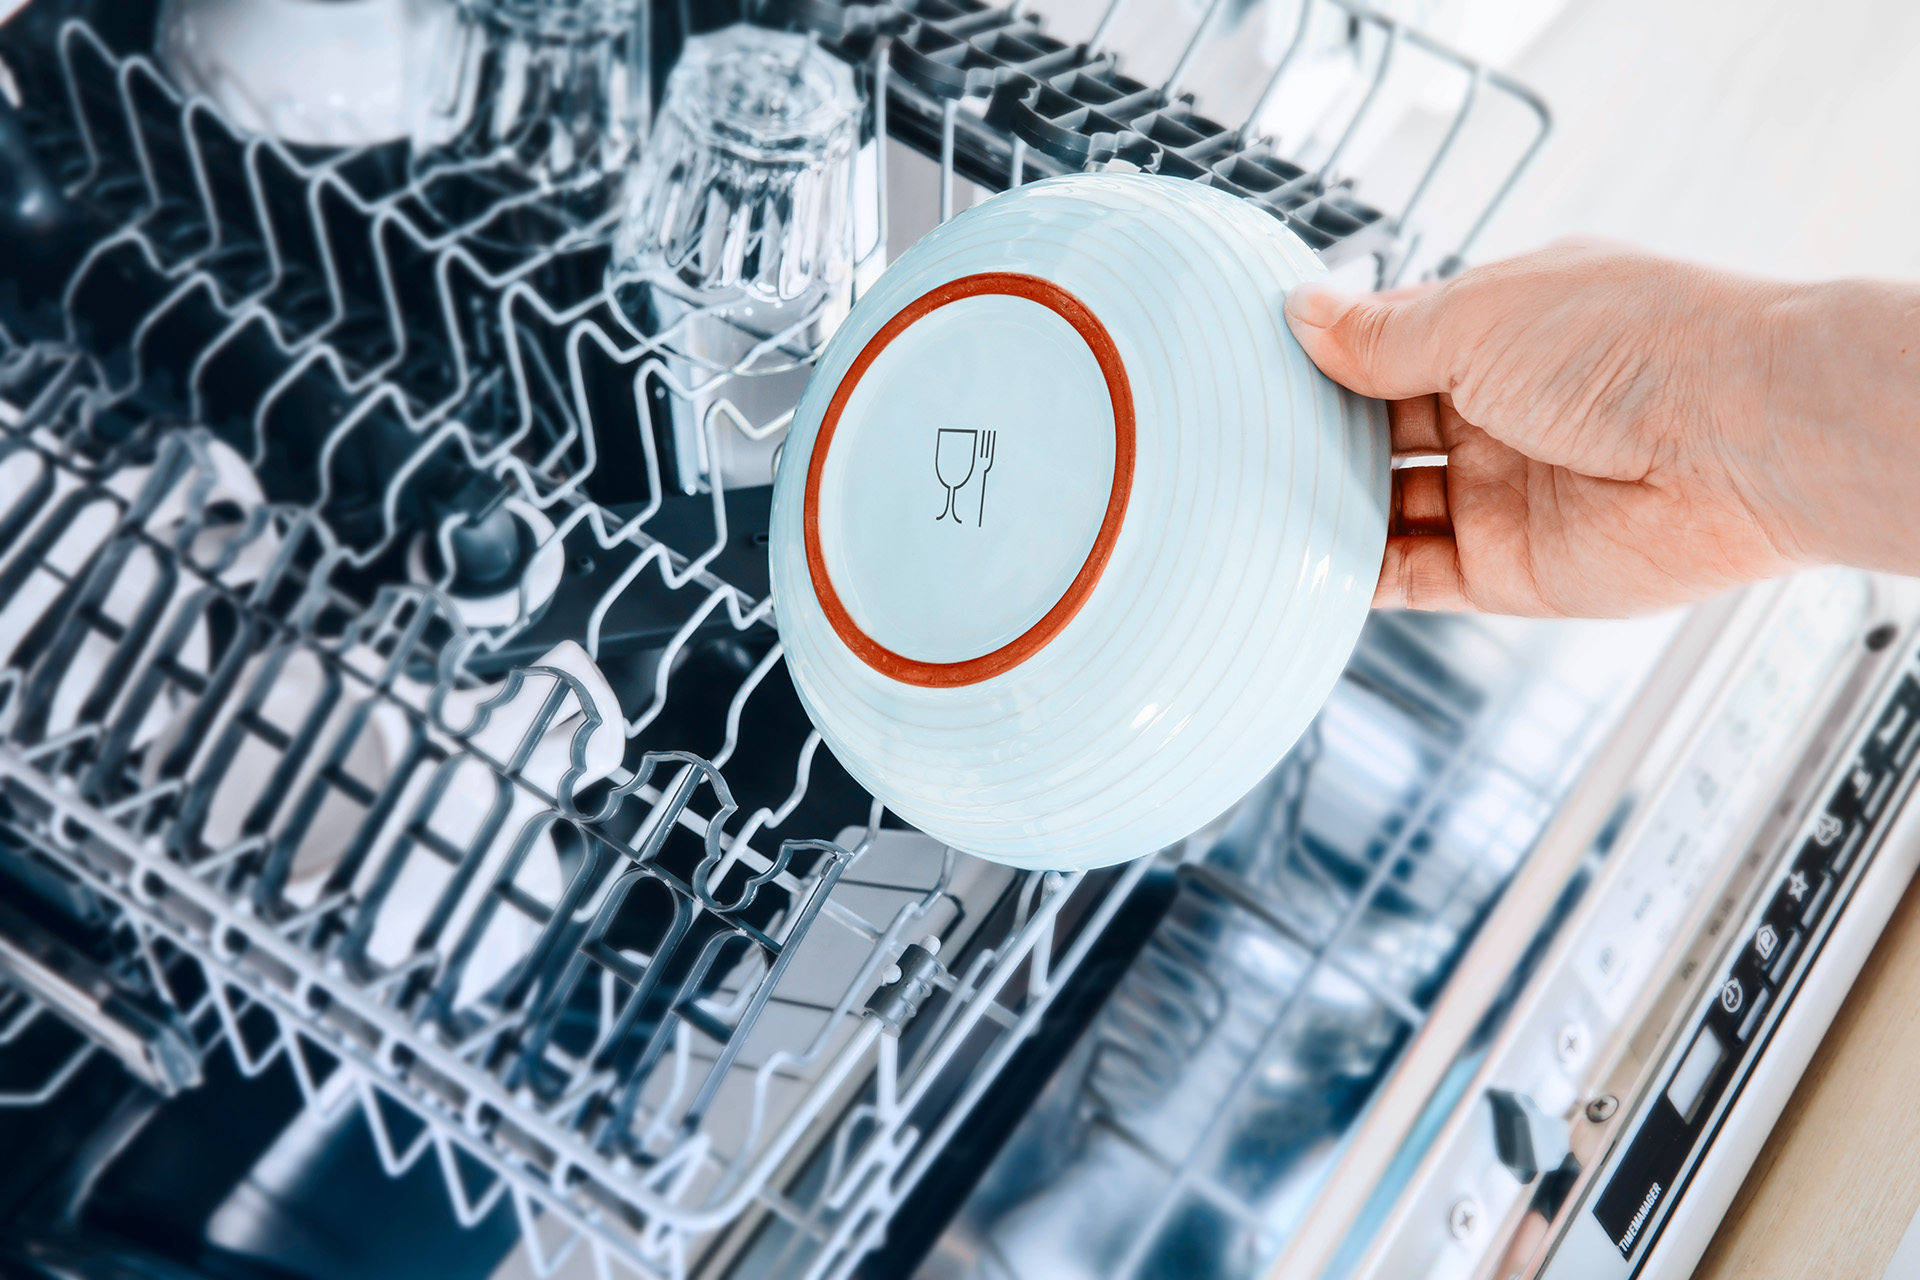 Символ на посуде пригодности мытья в посудомойке